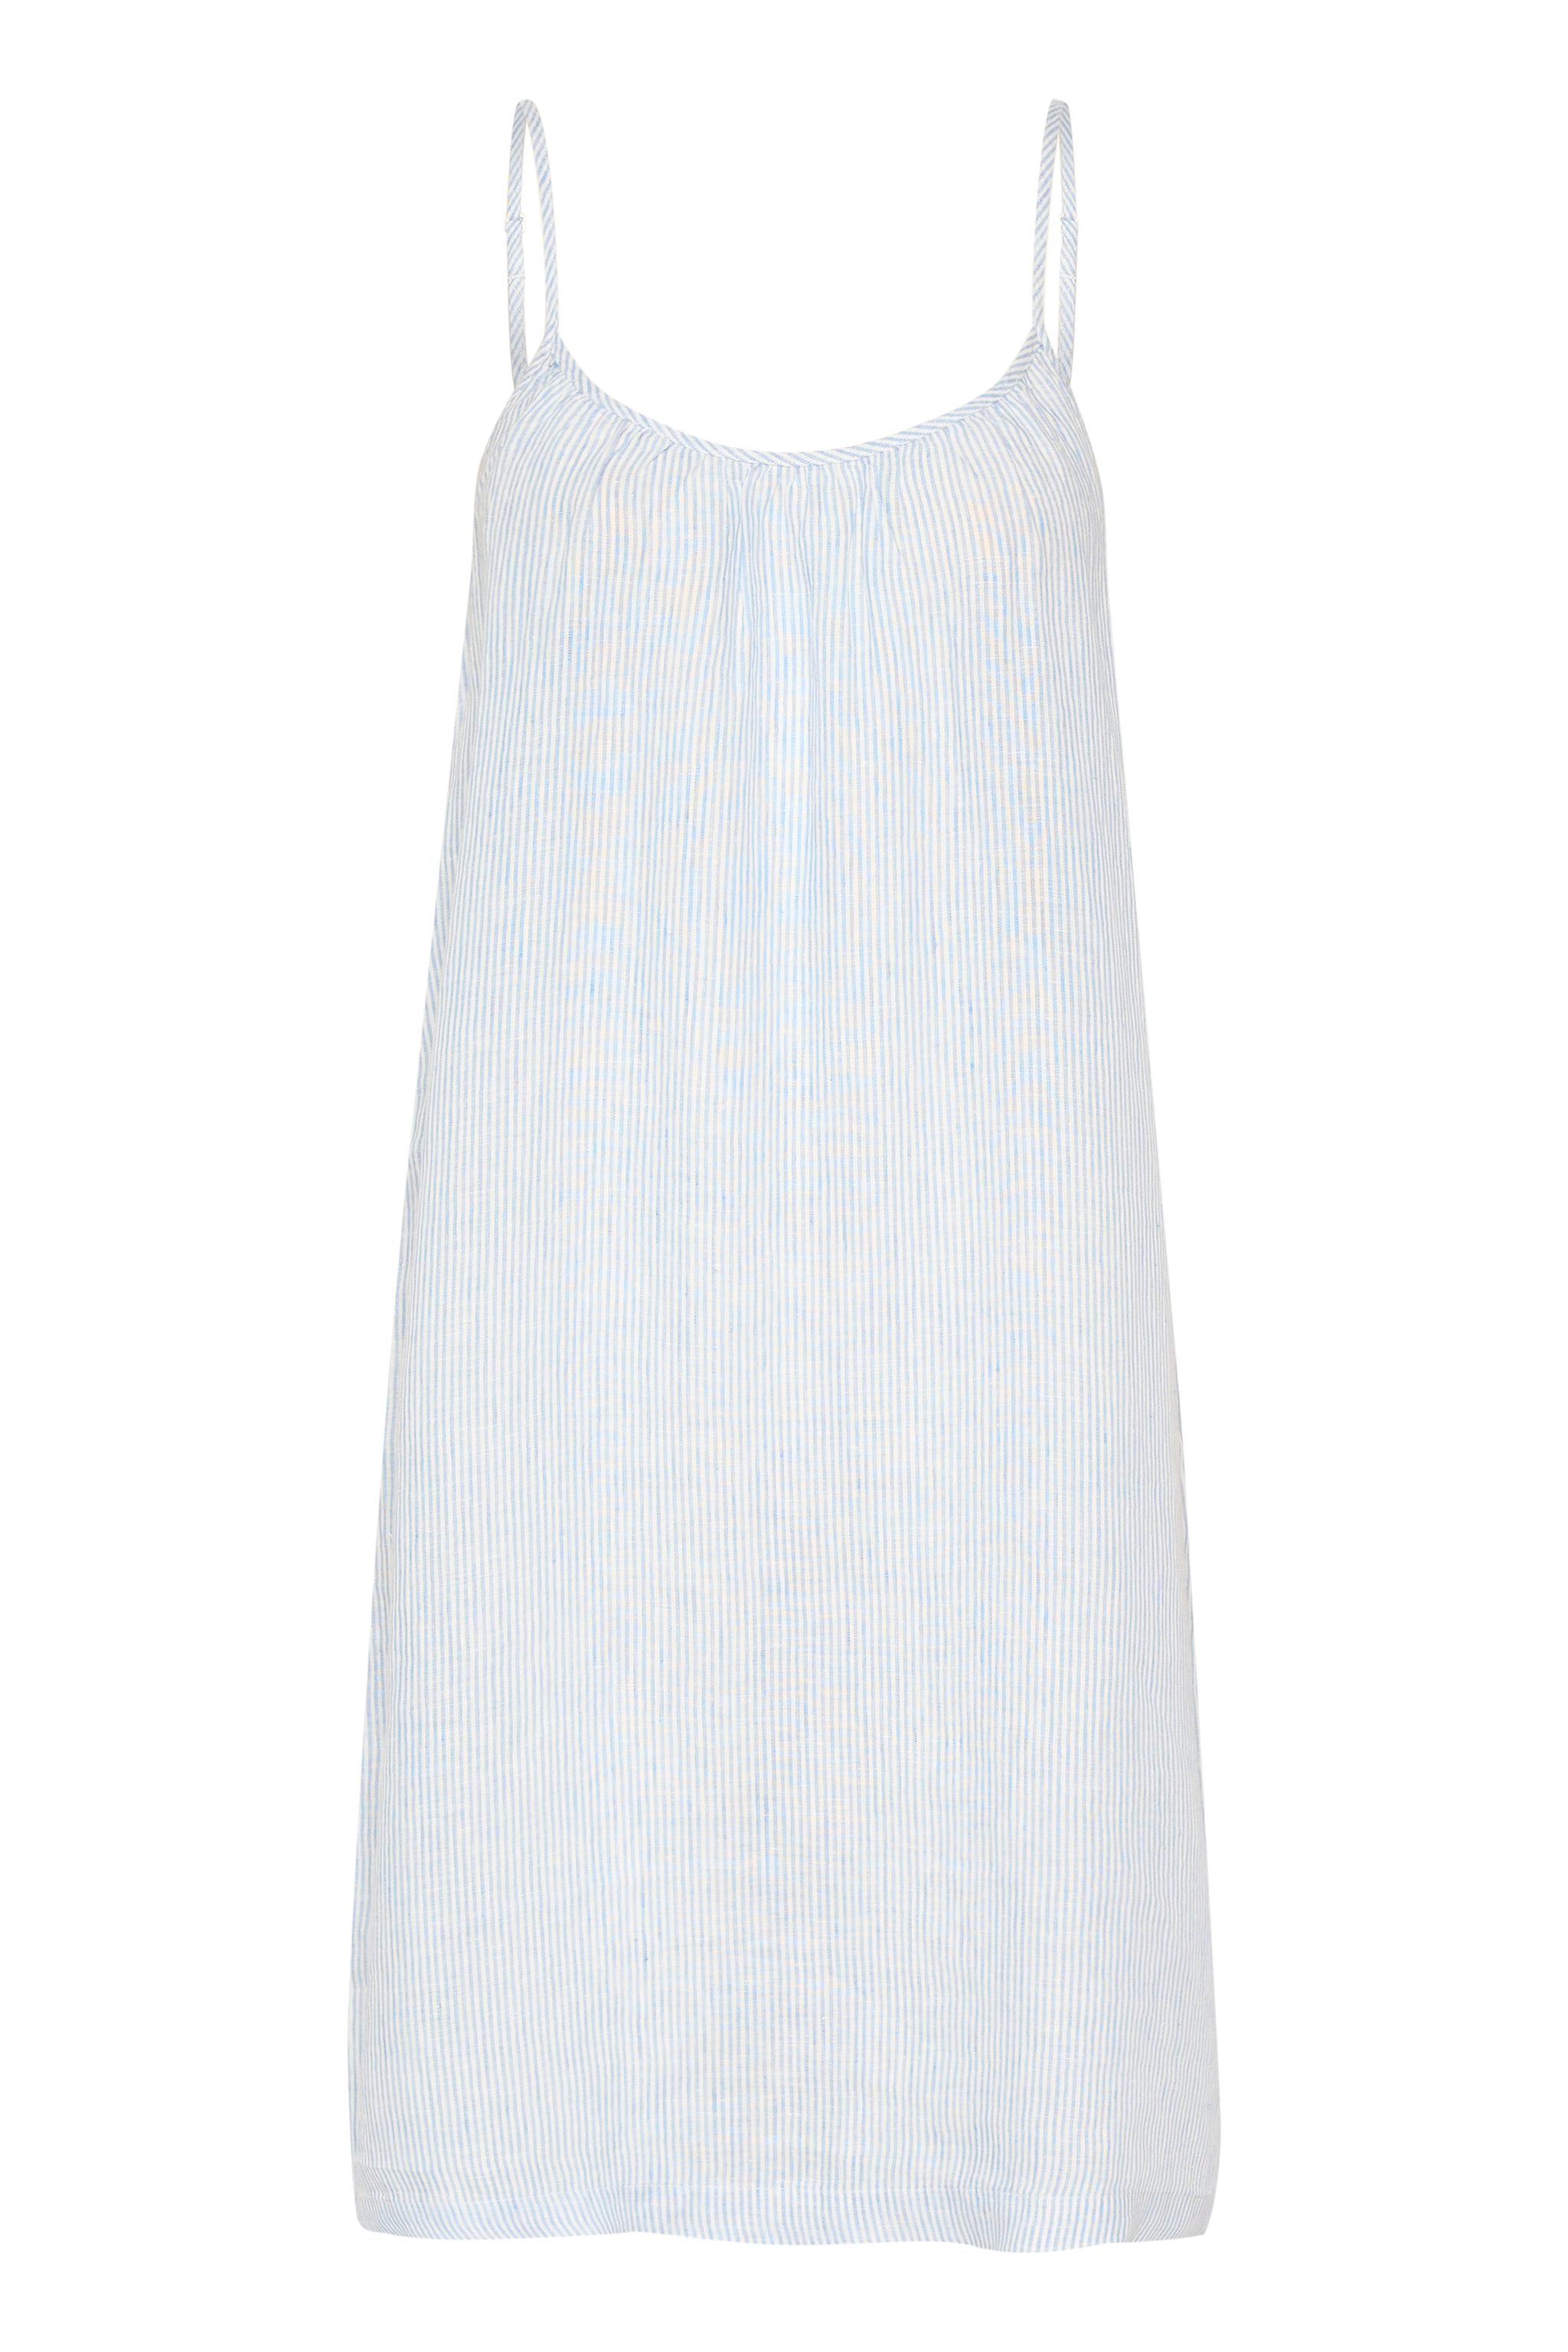 AlexianaPW Dress - Blue Stripe